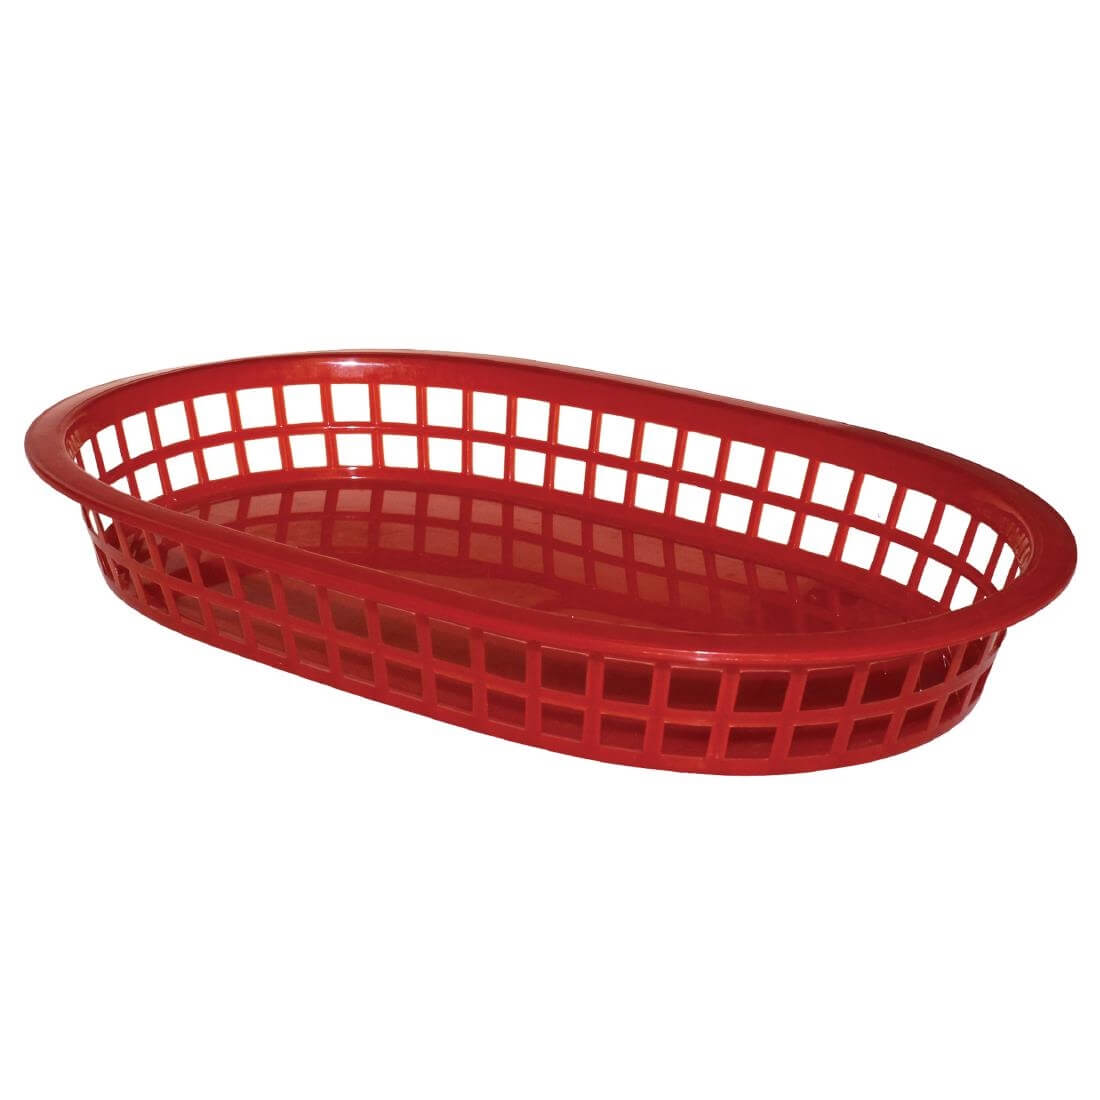 Oval Polypropylene Food Basket Red